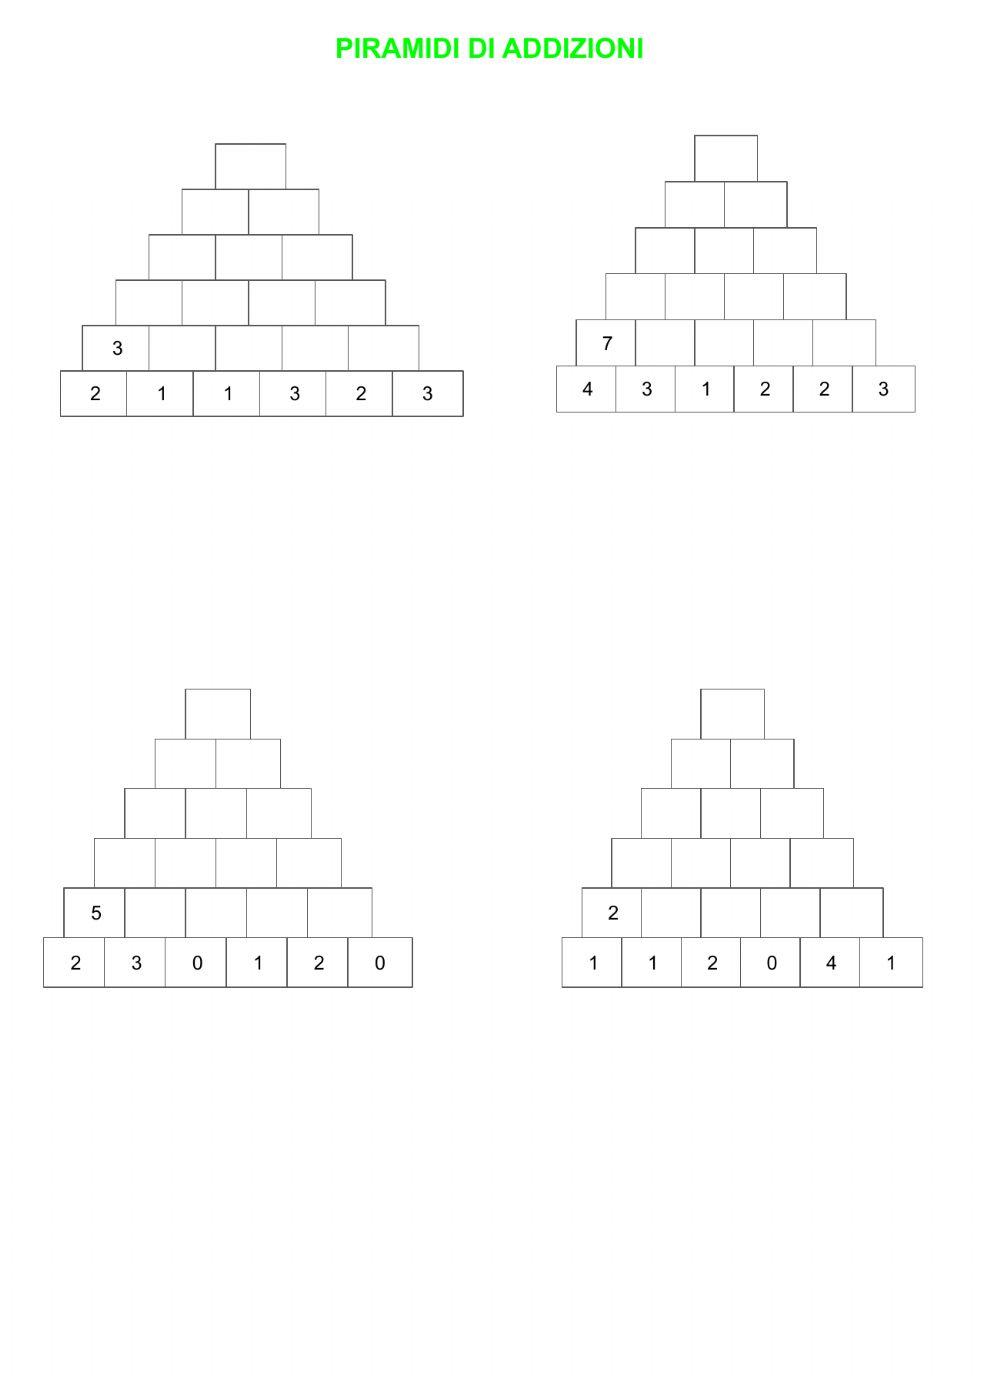 Piramidi di addizioni